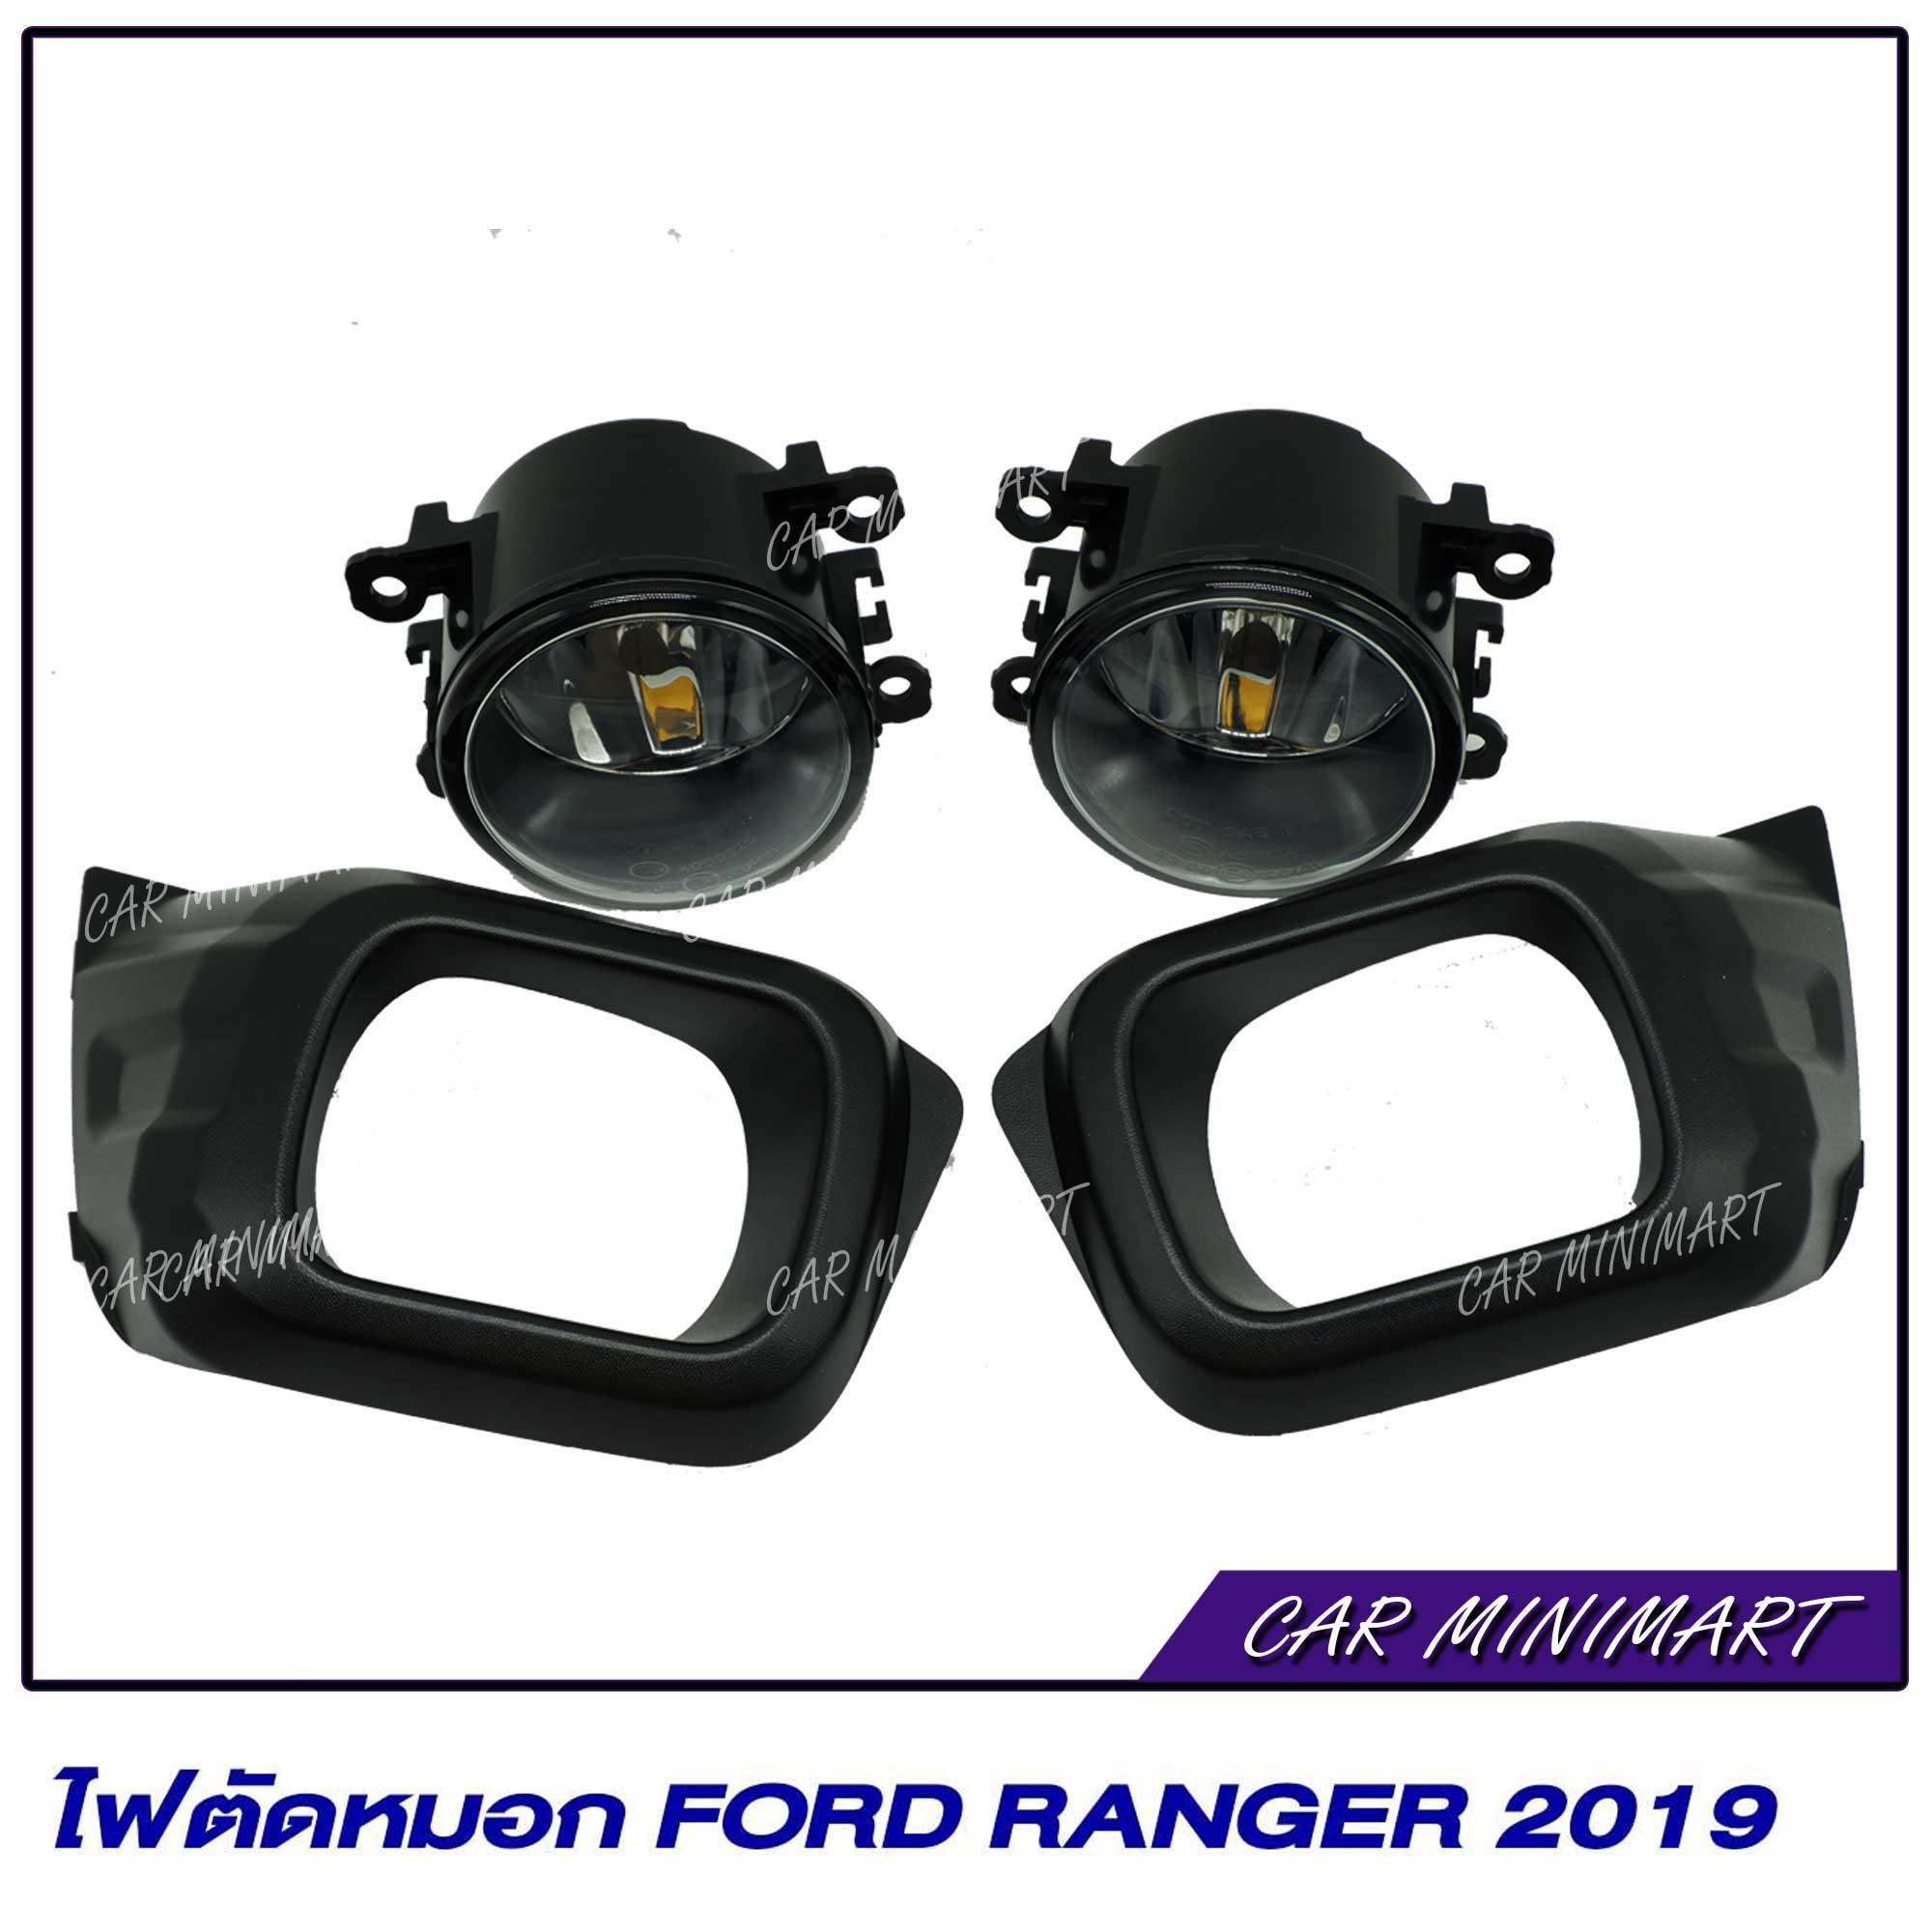 ไฟตัดหมอก ไฟสปอร์ตไลท์ สำหรับ Ford Ranger 2019 มาพร้อมฝาดำและชุดสายไฟ / 1 ชุด